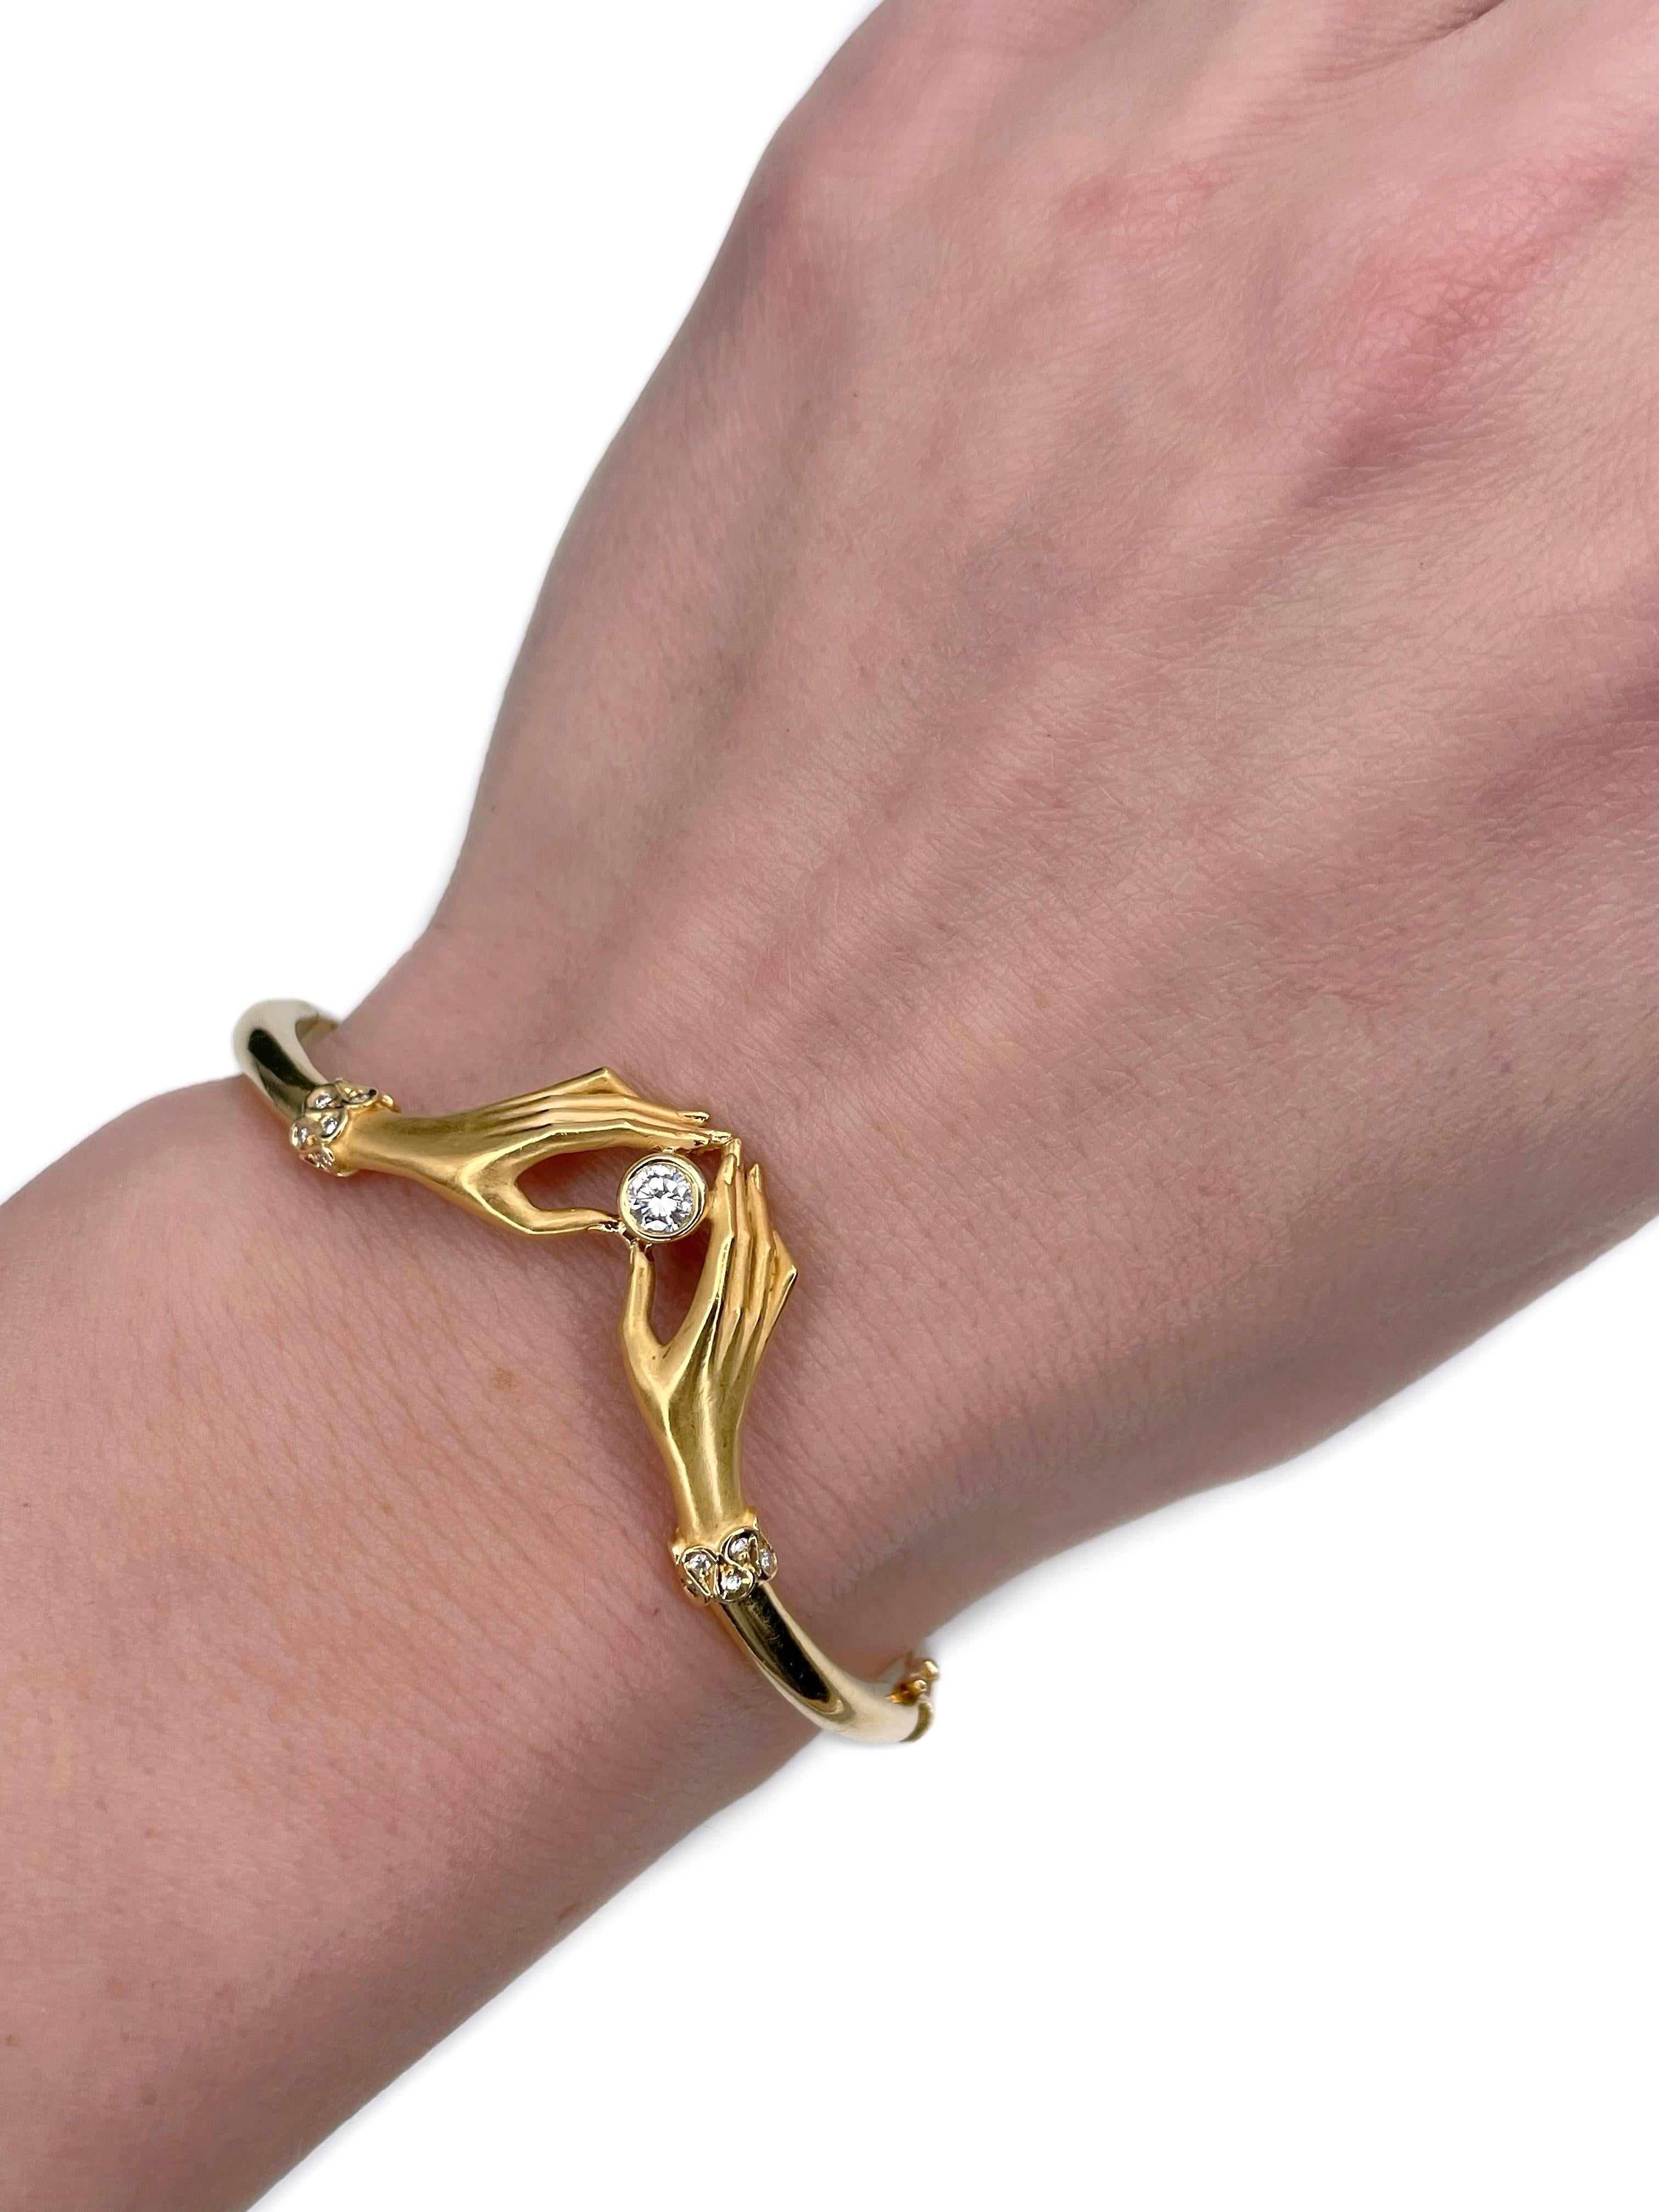 Il s'agit d'un élégant bracelet à charnière conçu par la marque de joaillerie espagnole 